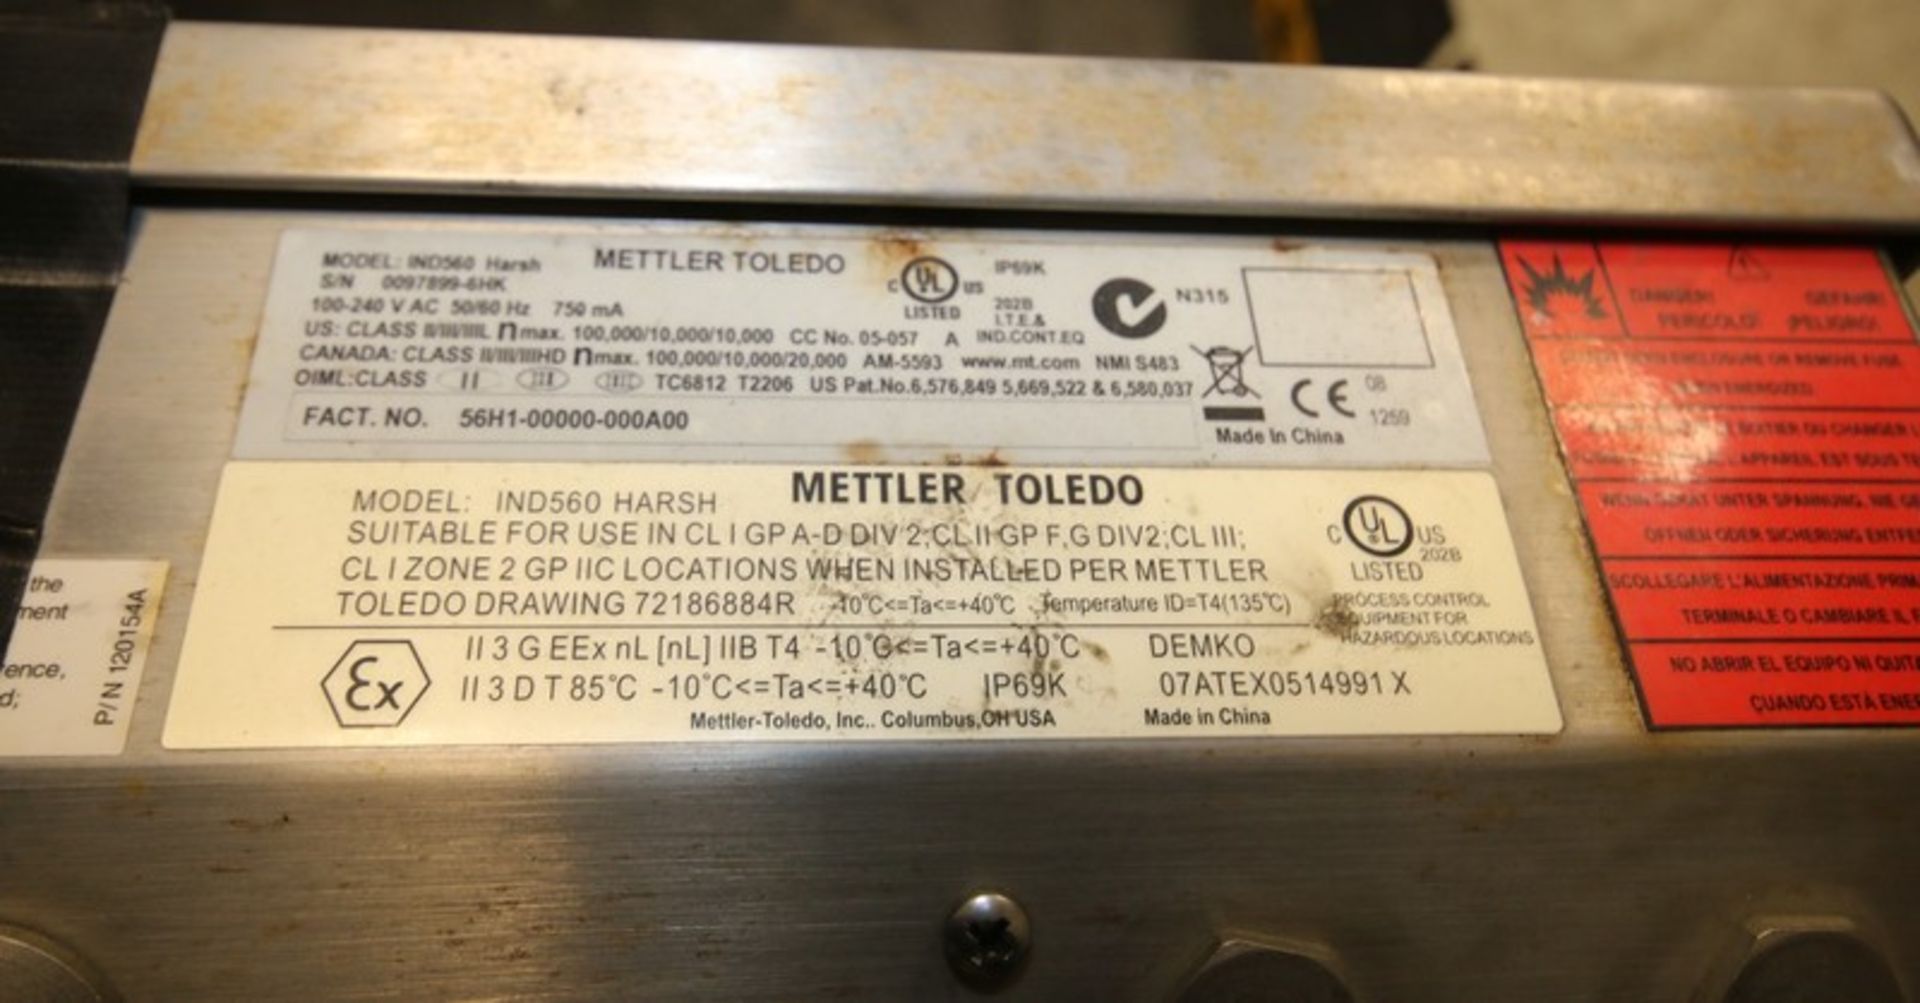 Mettler Toledo Portable Digital Platform Scale, Model IND560 Harsh, SN 0097899-6HK, with 42" x 42" - Image 5 of 5